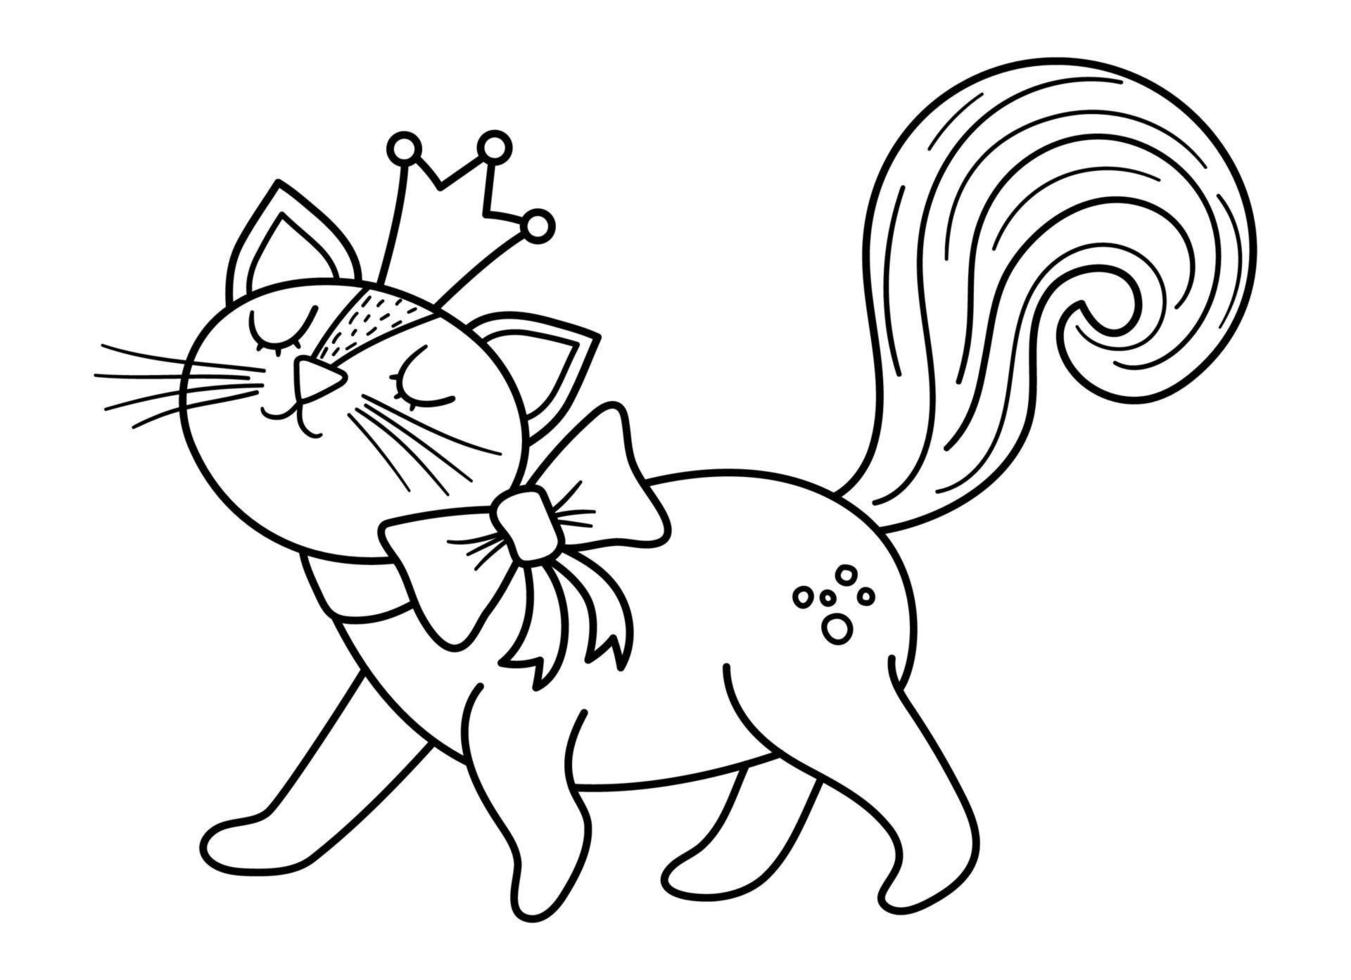 fiaba in bianco e nero vettore gatto principessa. animale di linea fantasy in corona isolato su sfondo bianco. personaggio da favola. icona magica del fumetto o pagina da colorare